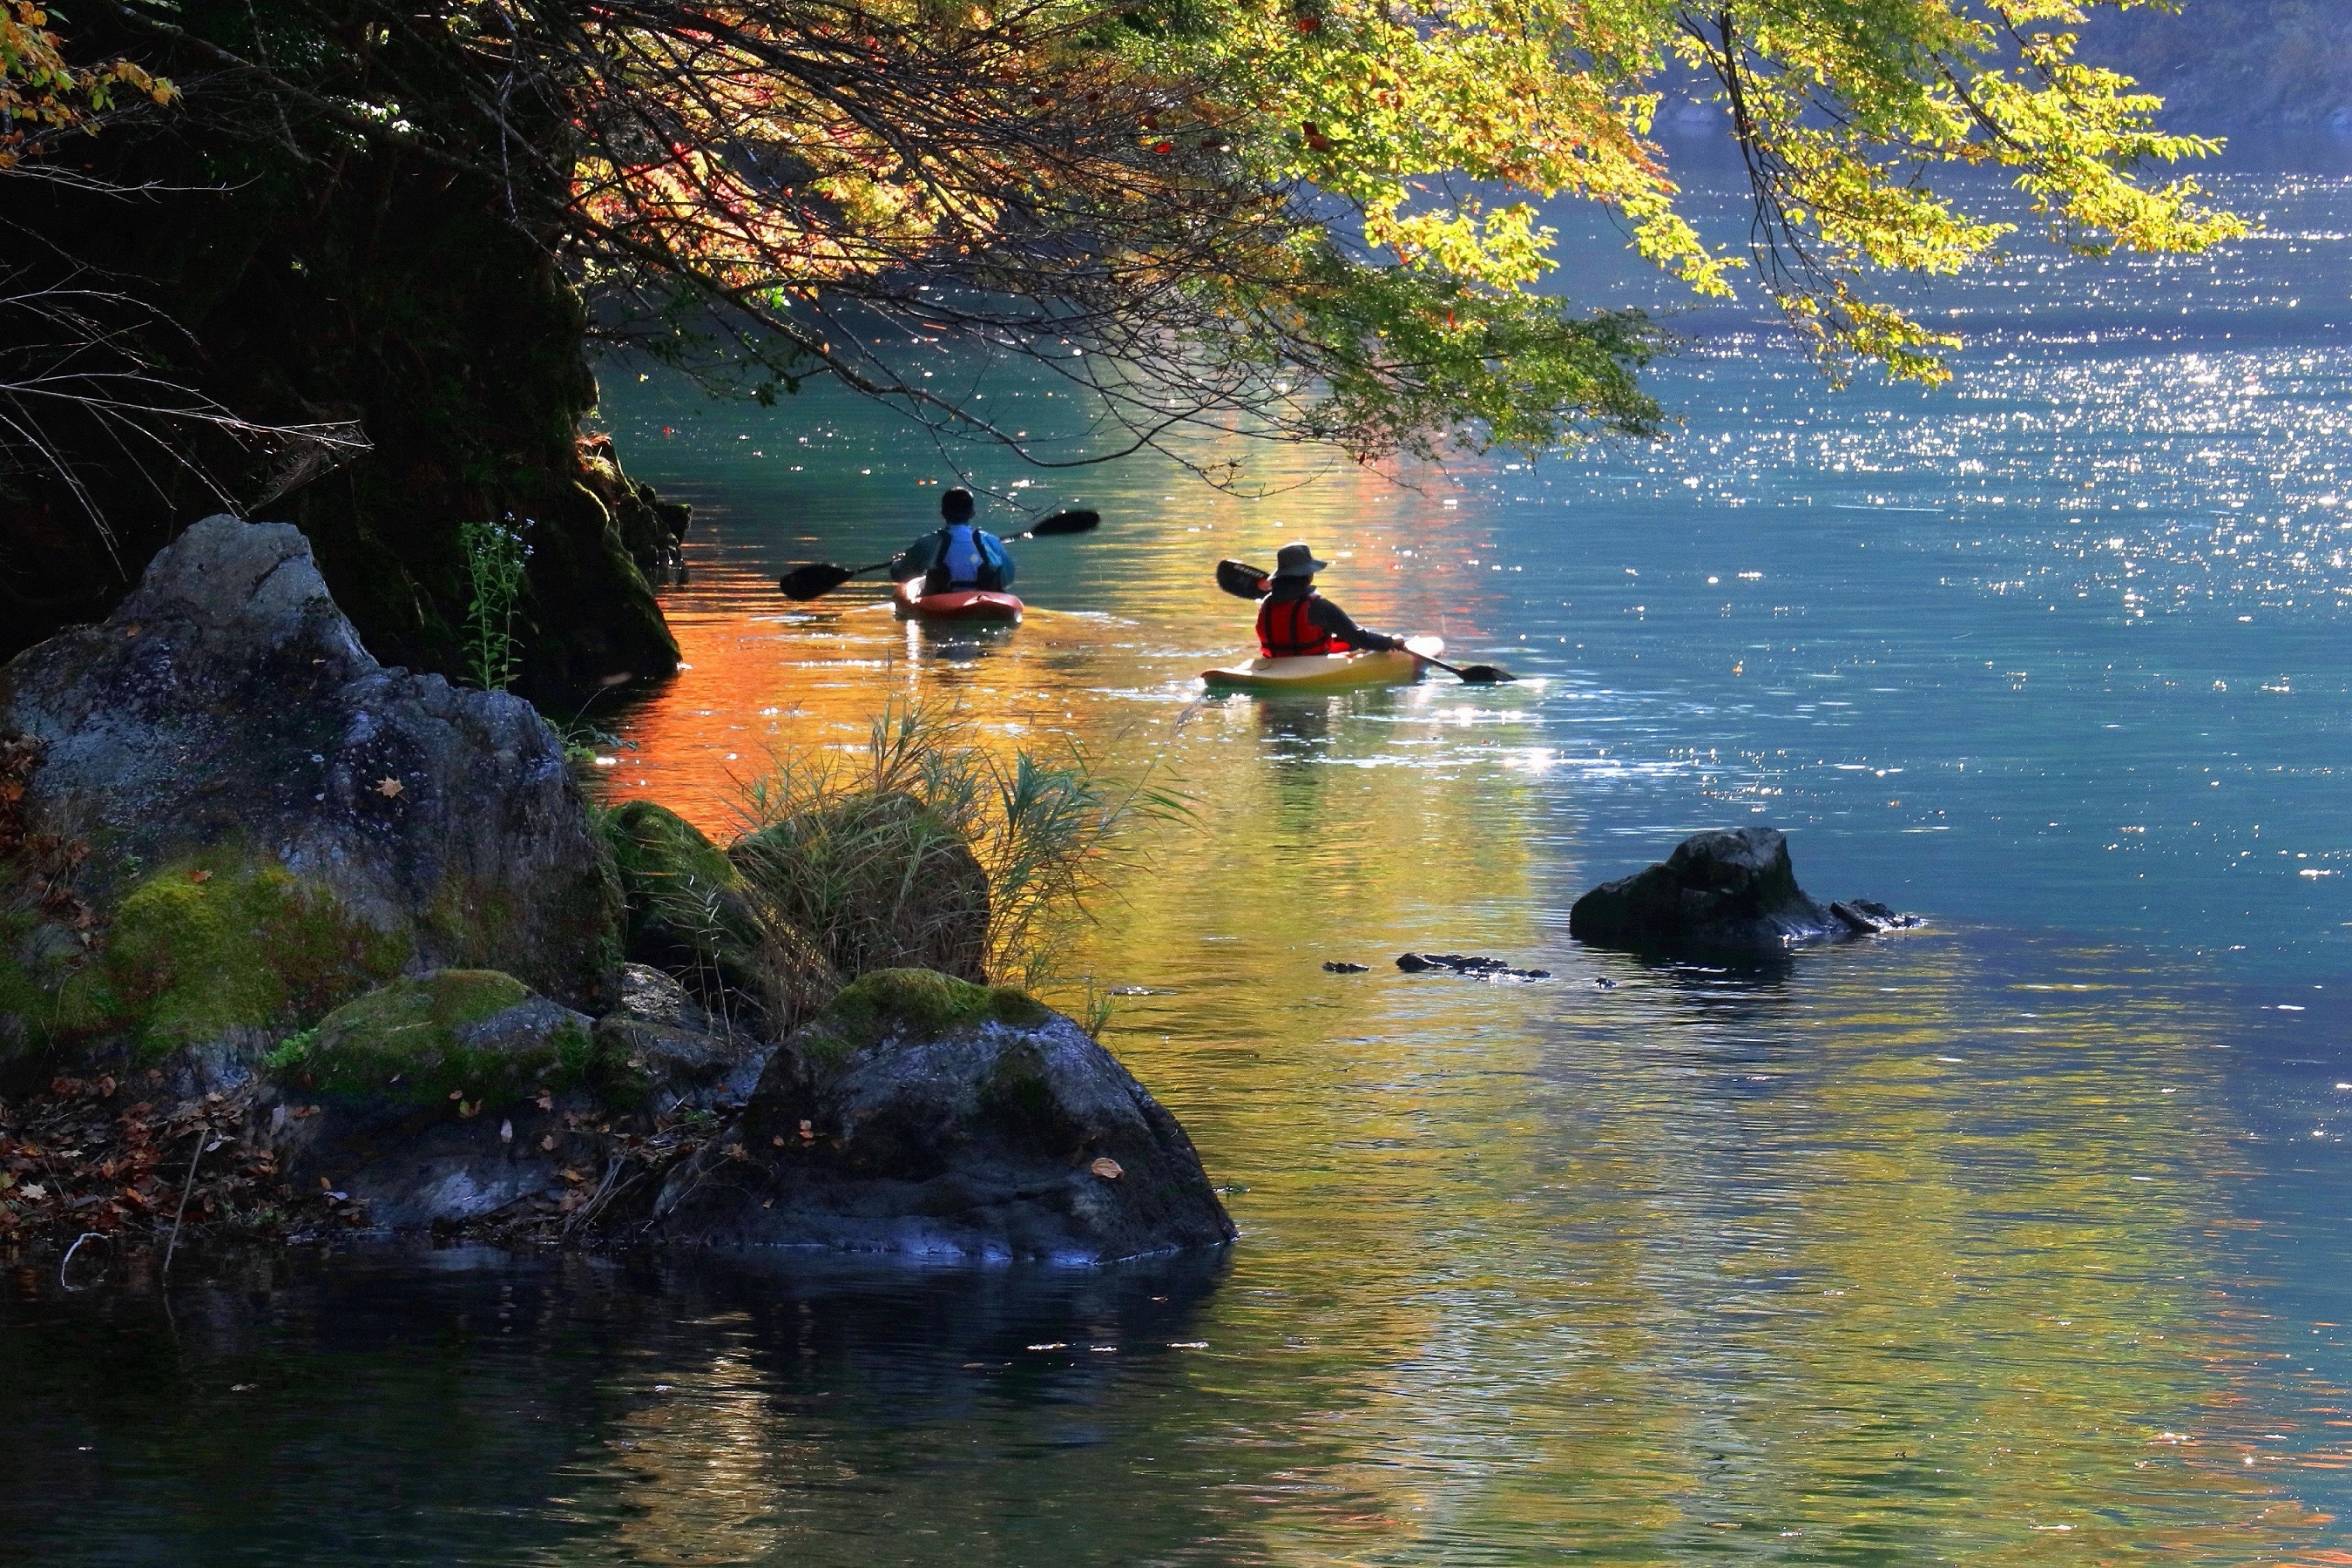 最優秀賞「秋色の湖」の写真